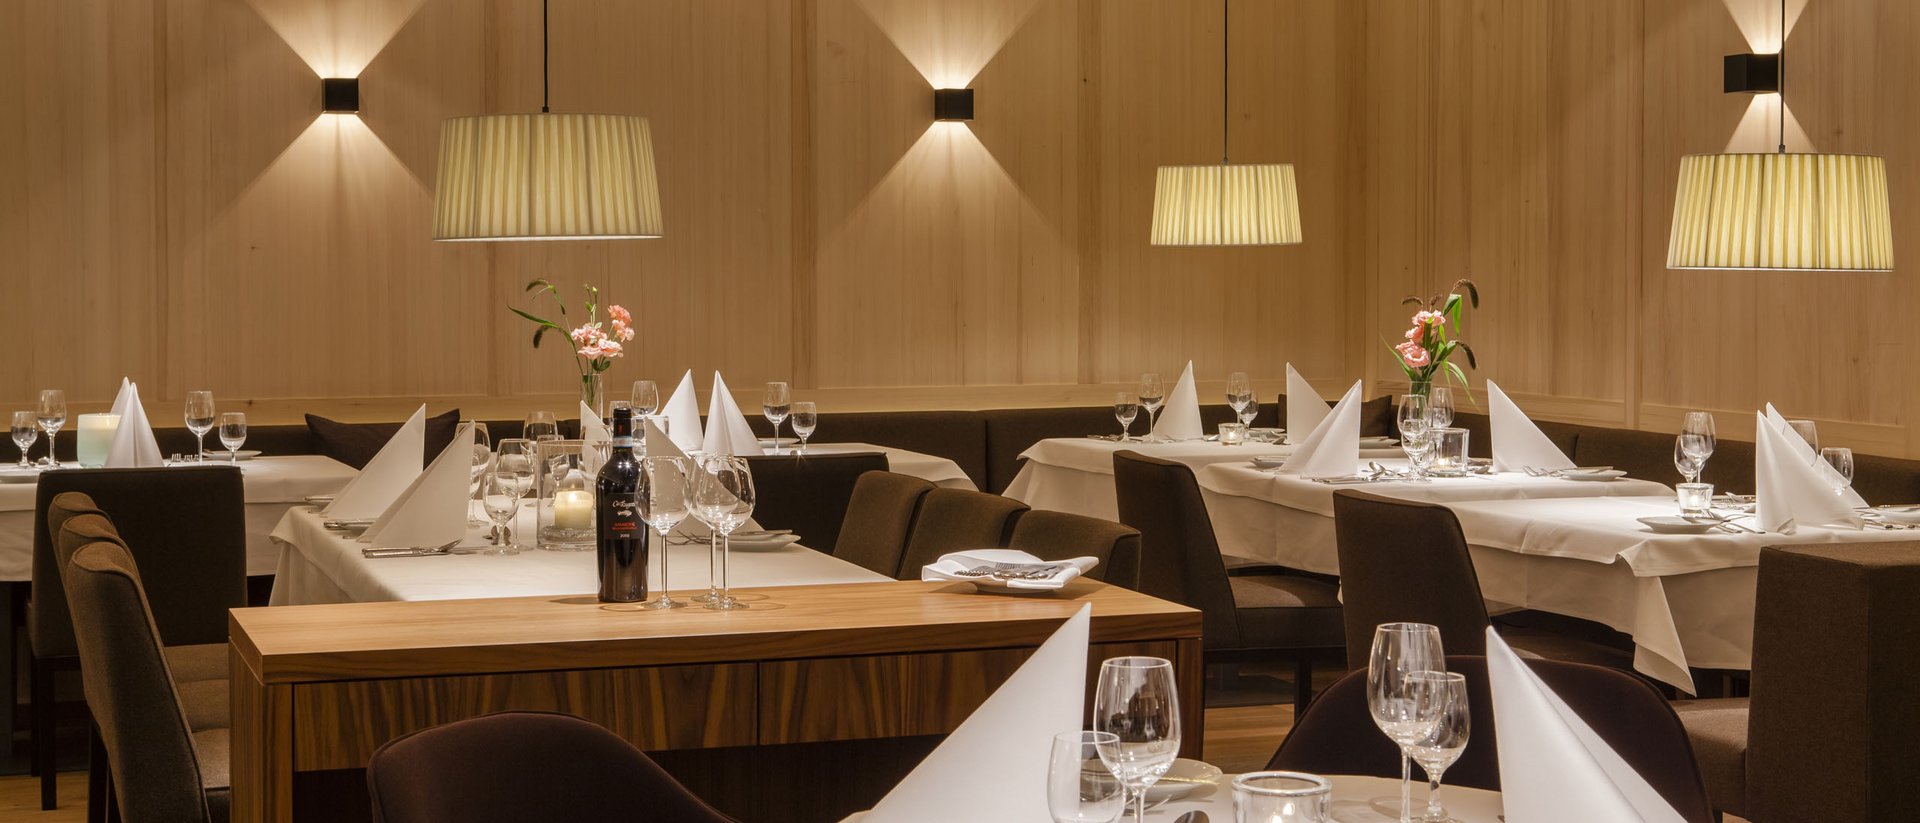 Oberstaufen: restaurant with 5-star cuisine